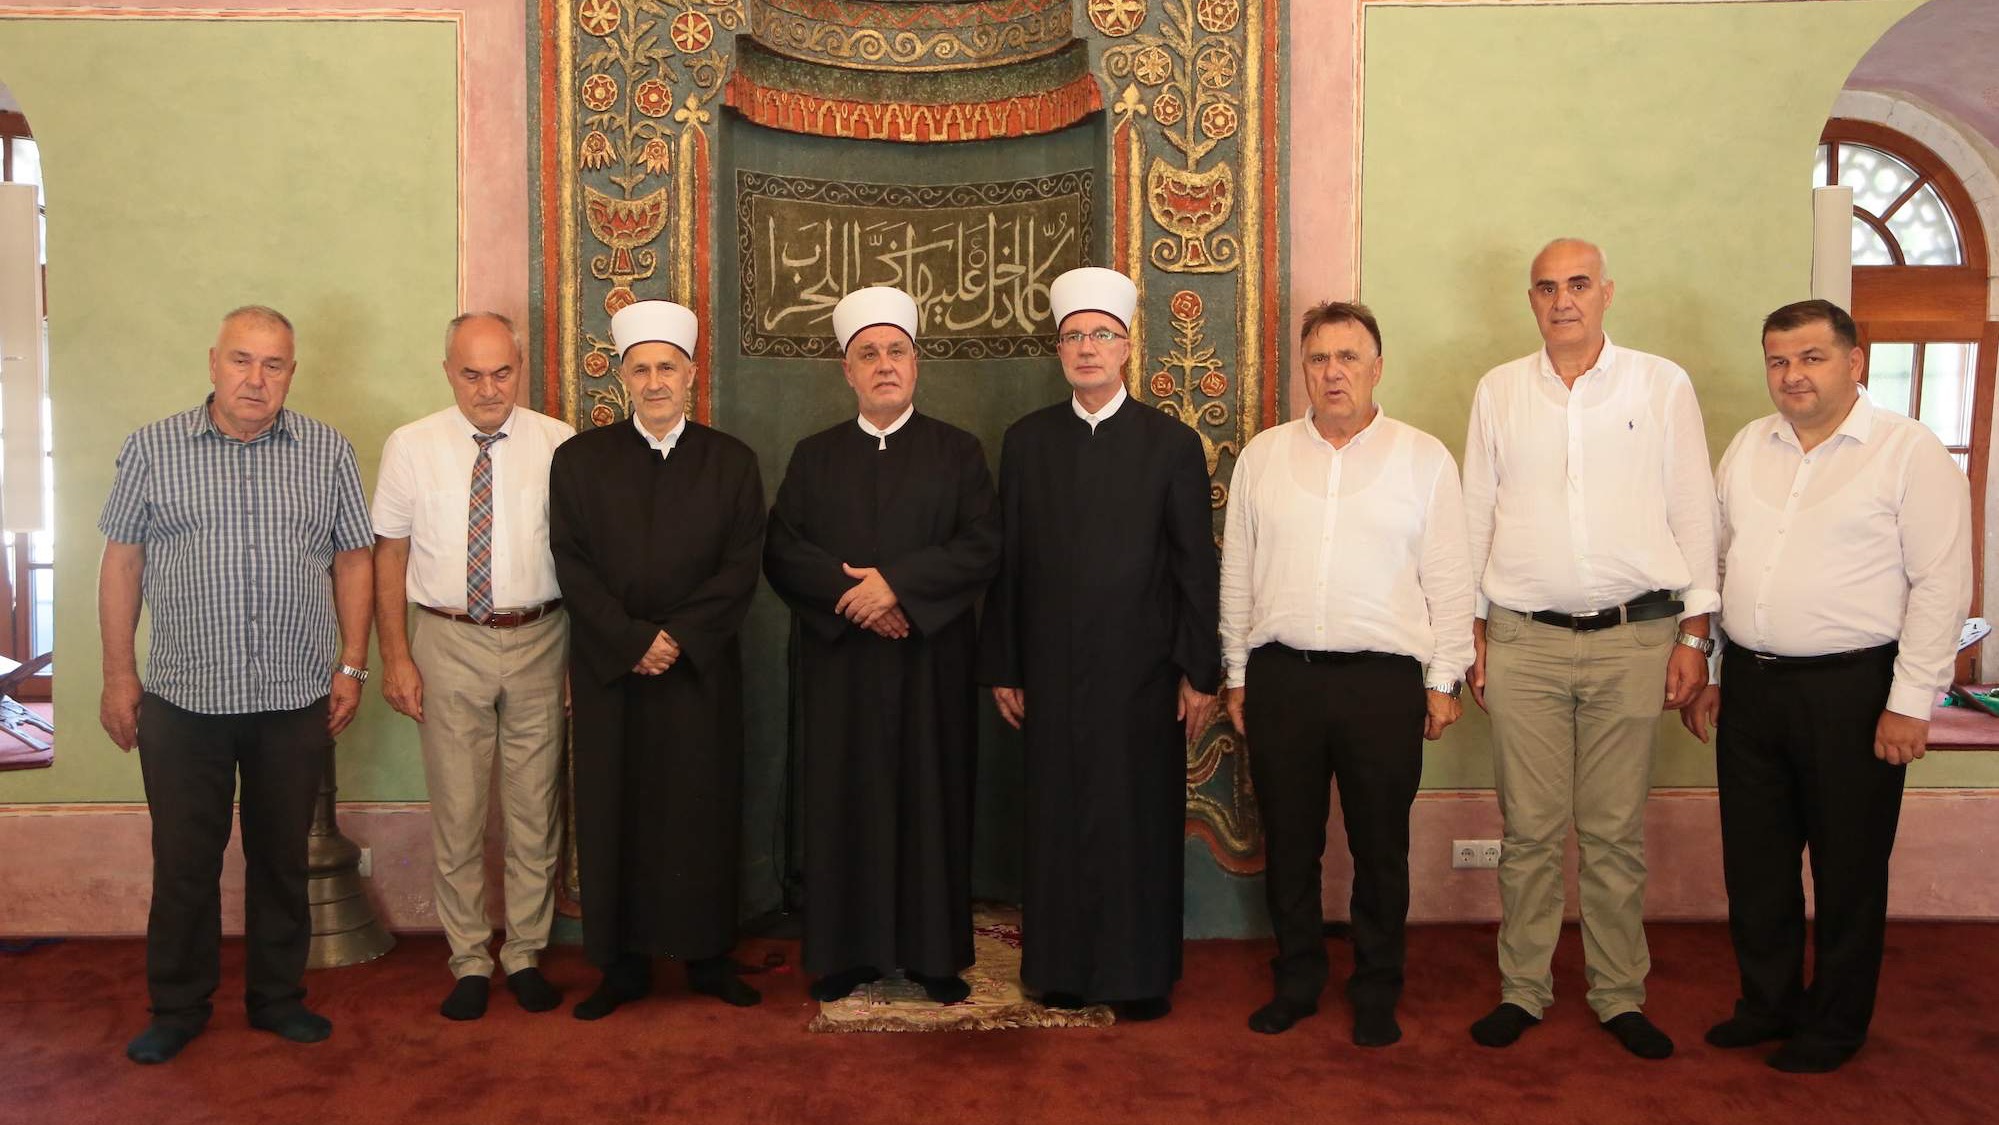 Reisul-ulema i muftija tuzlanski obišli restauriranu Husejnija džamiju u Gradačcu